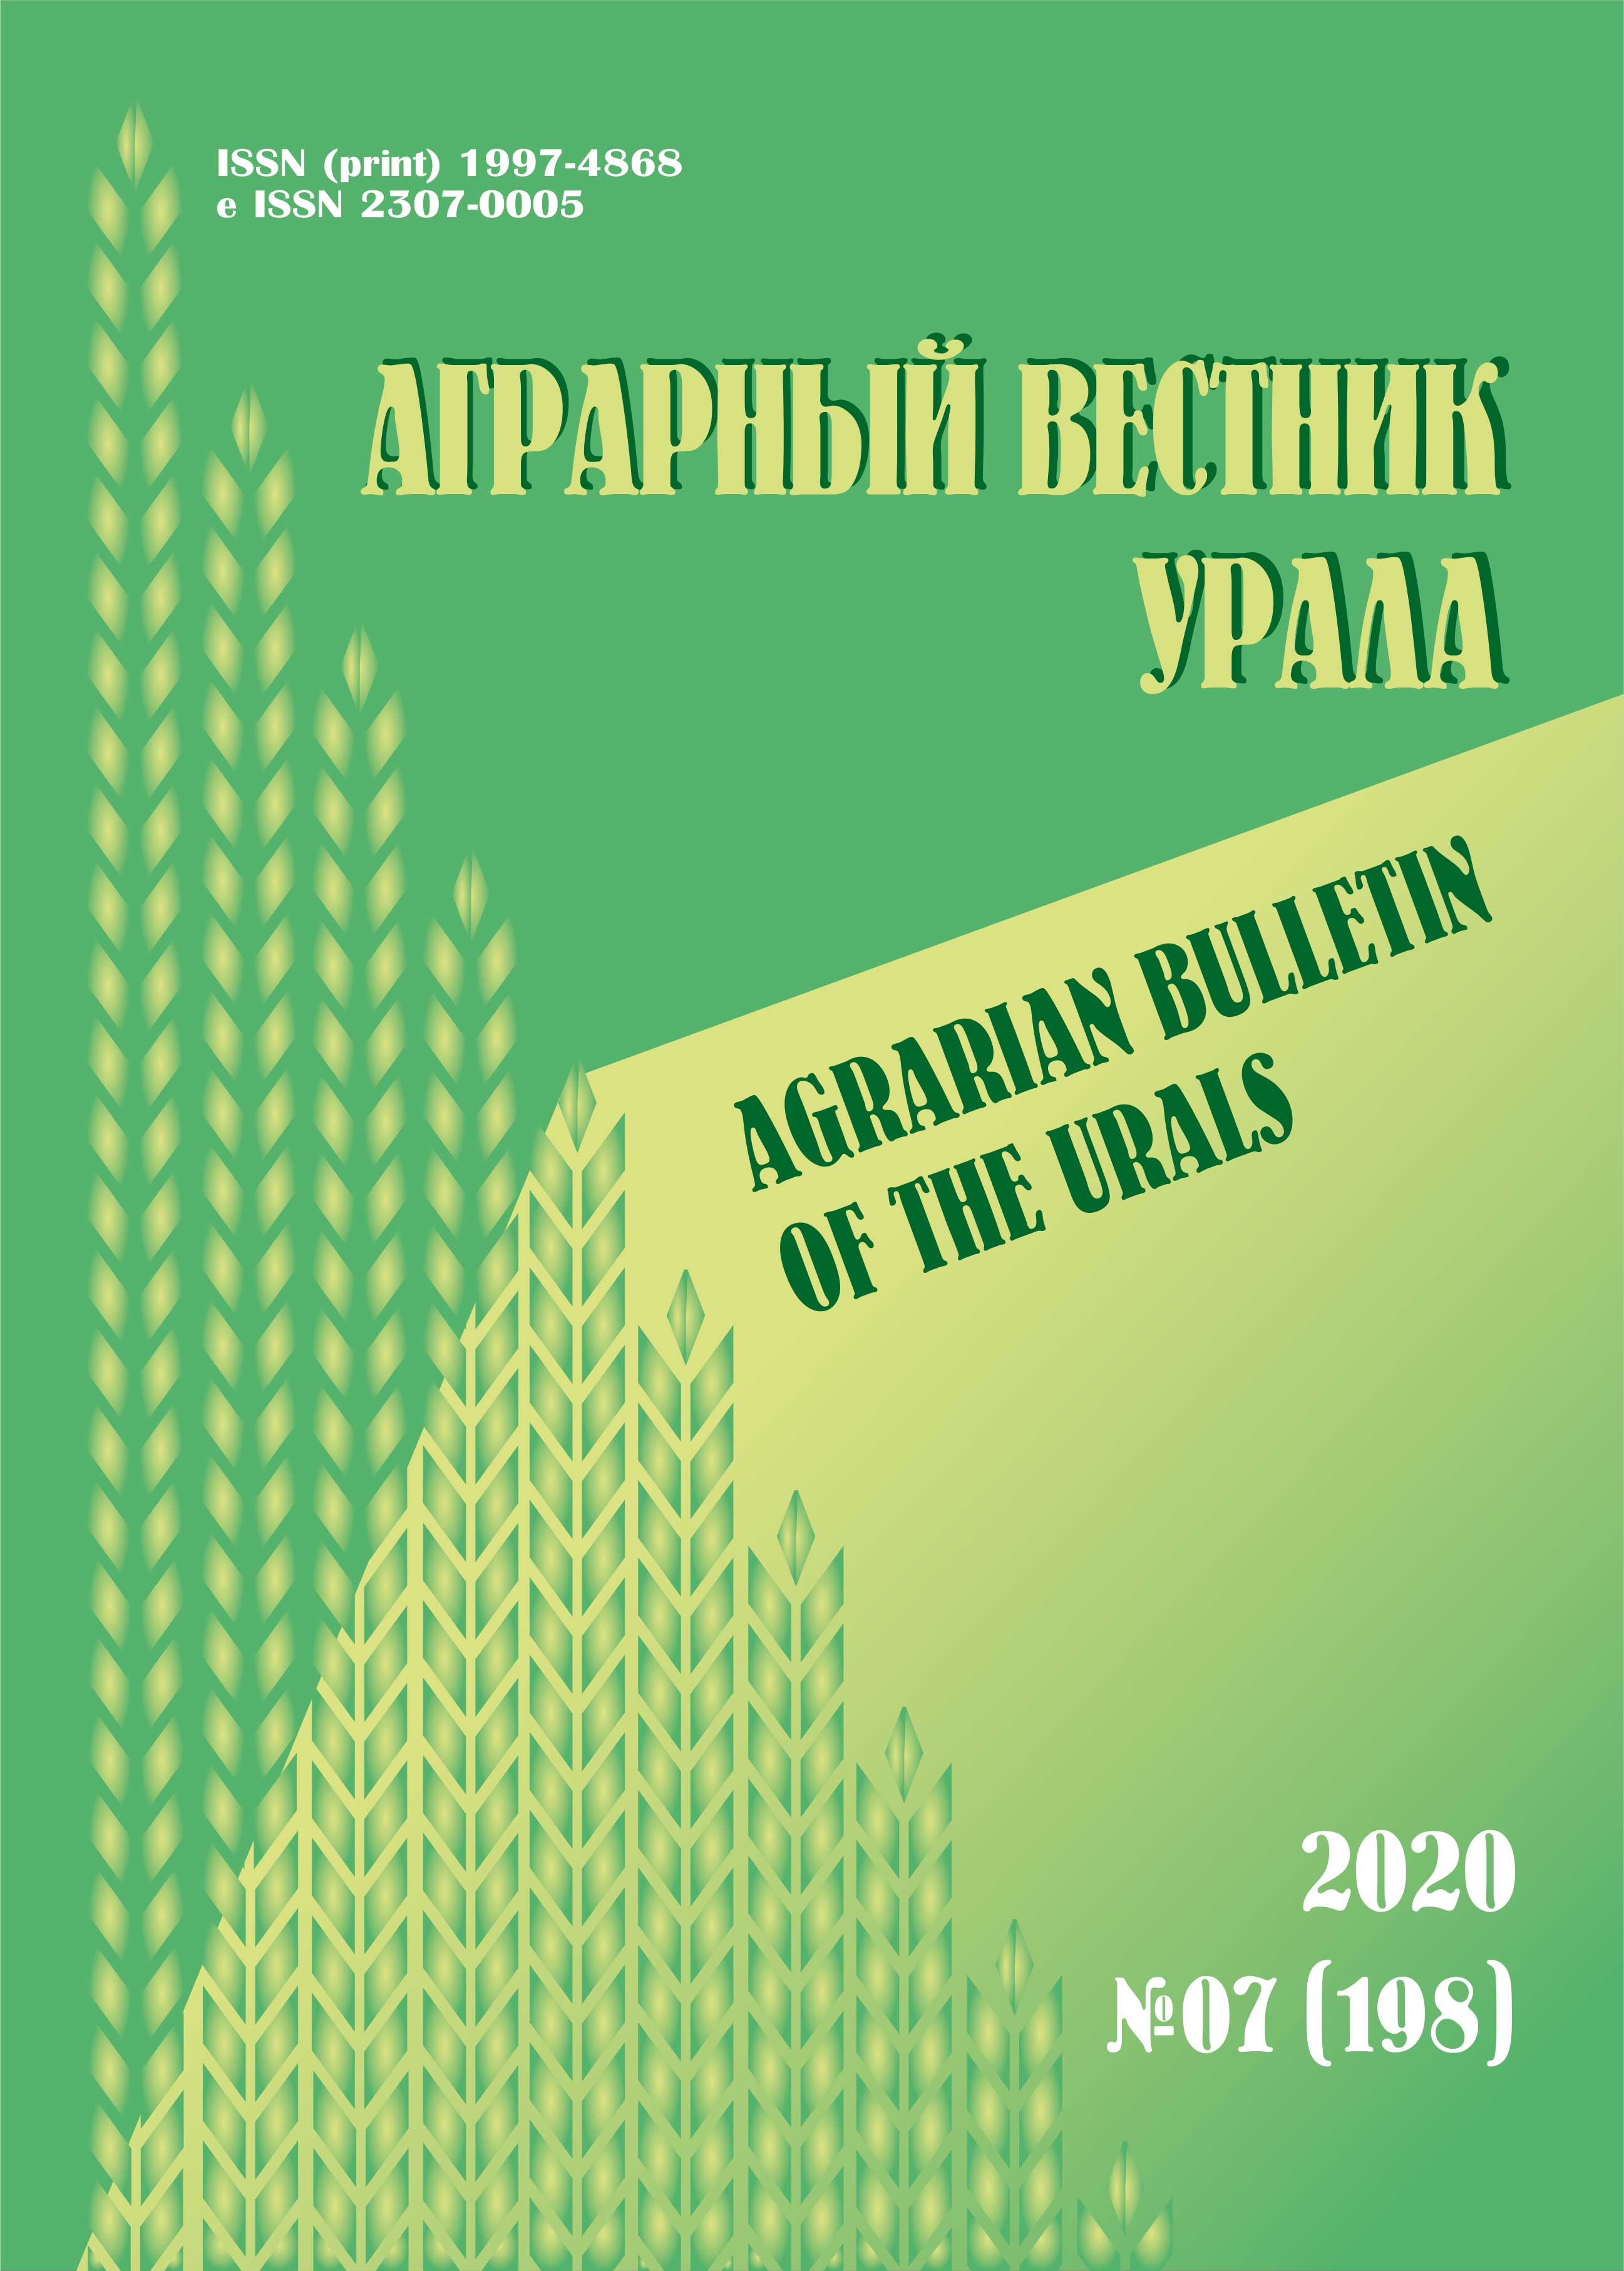             Оценка уровня продуктивности и адаптивного потенциала сортов льна масличного в условиях Беларуси
    